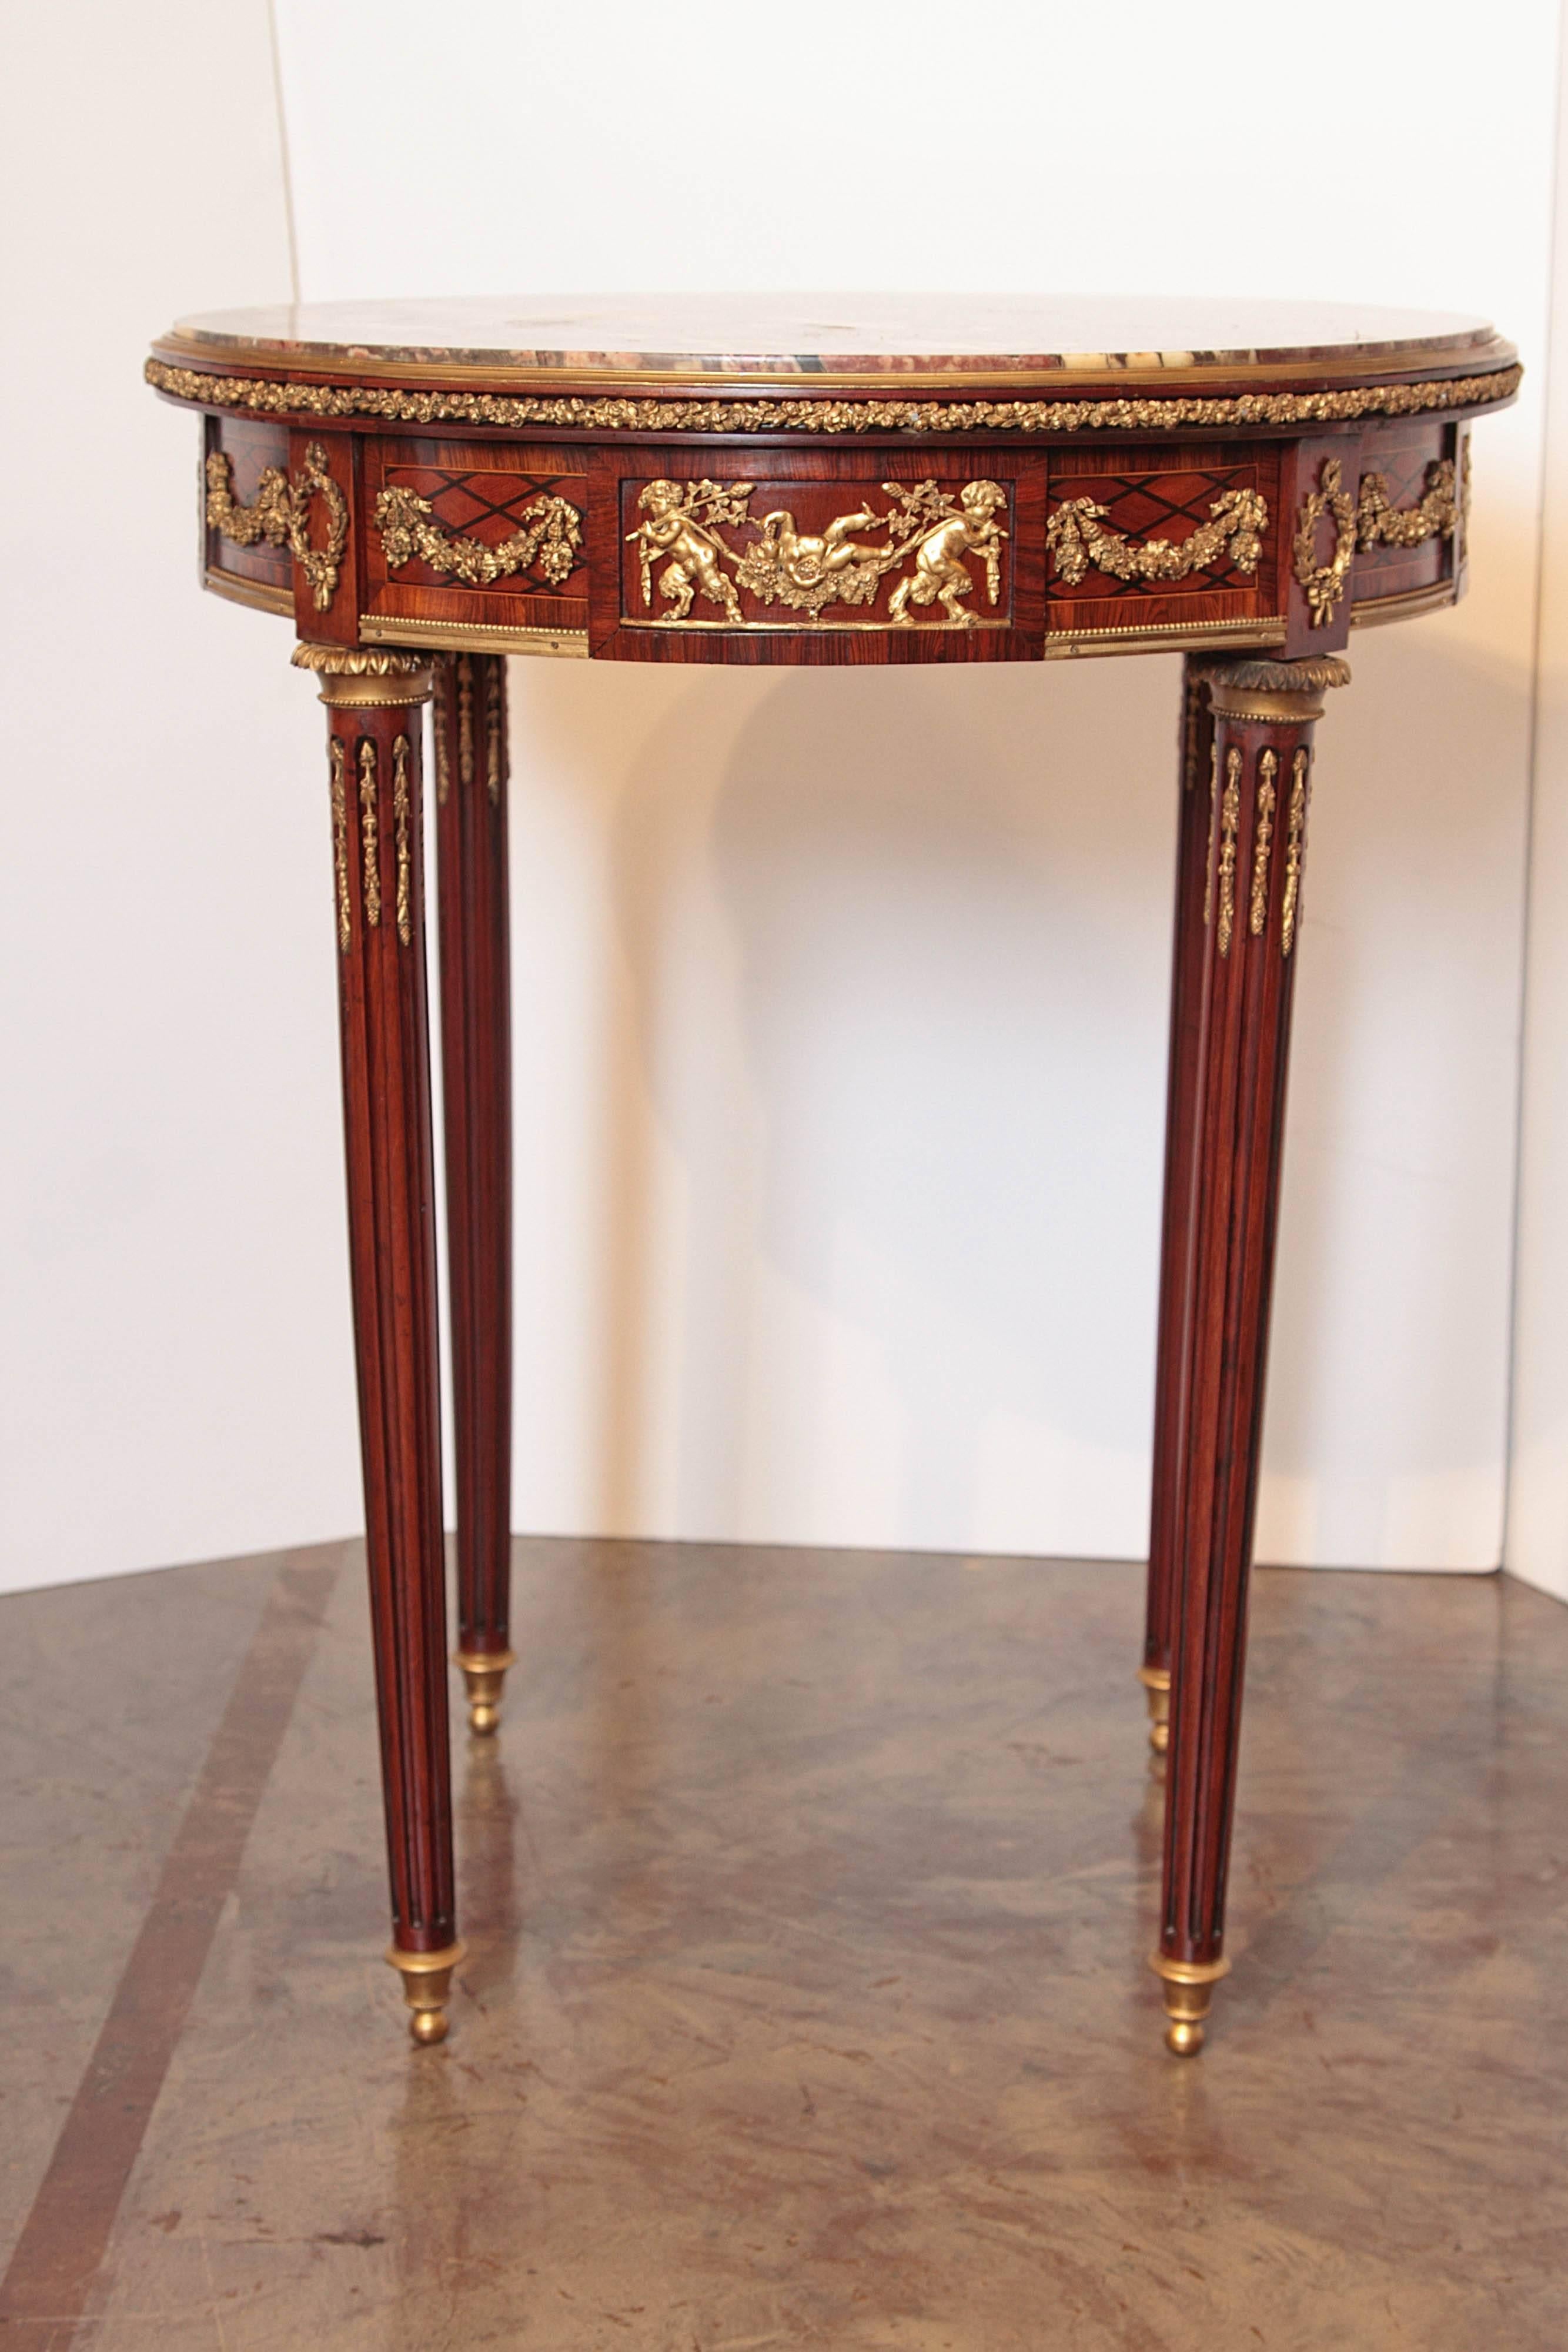 table guéridon de style Louis XVI du XIXe siècle en acajou et bronze doré avec plateau en marbre

Beaux détails en bronze doré. Dessus en marbre brèche violette d'origine. Tiroir unique